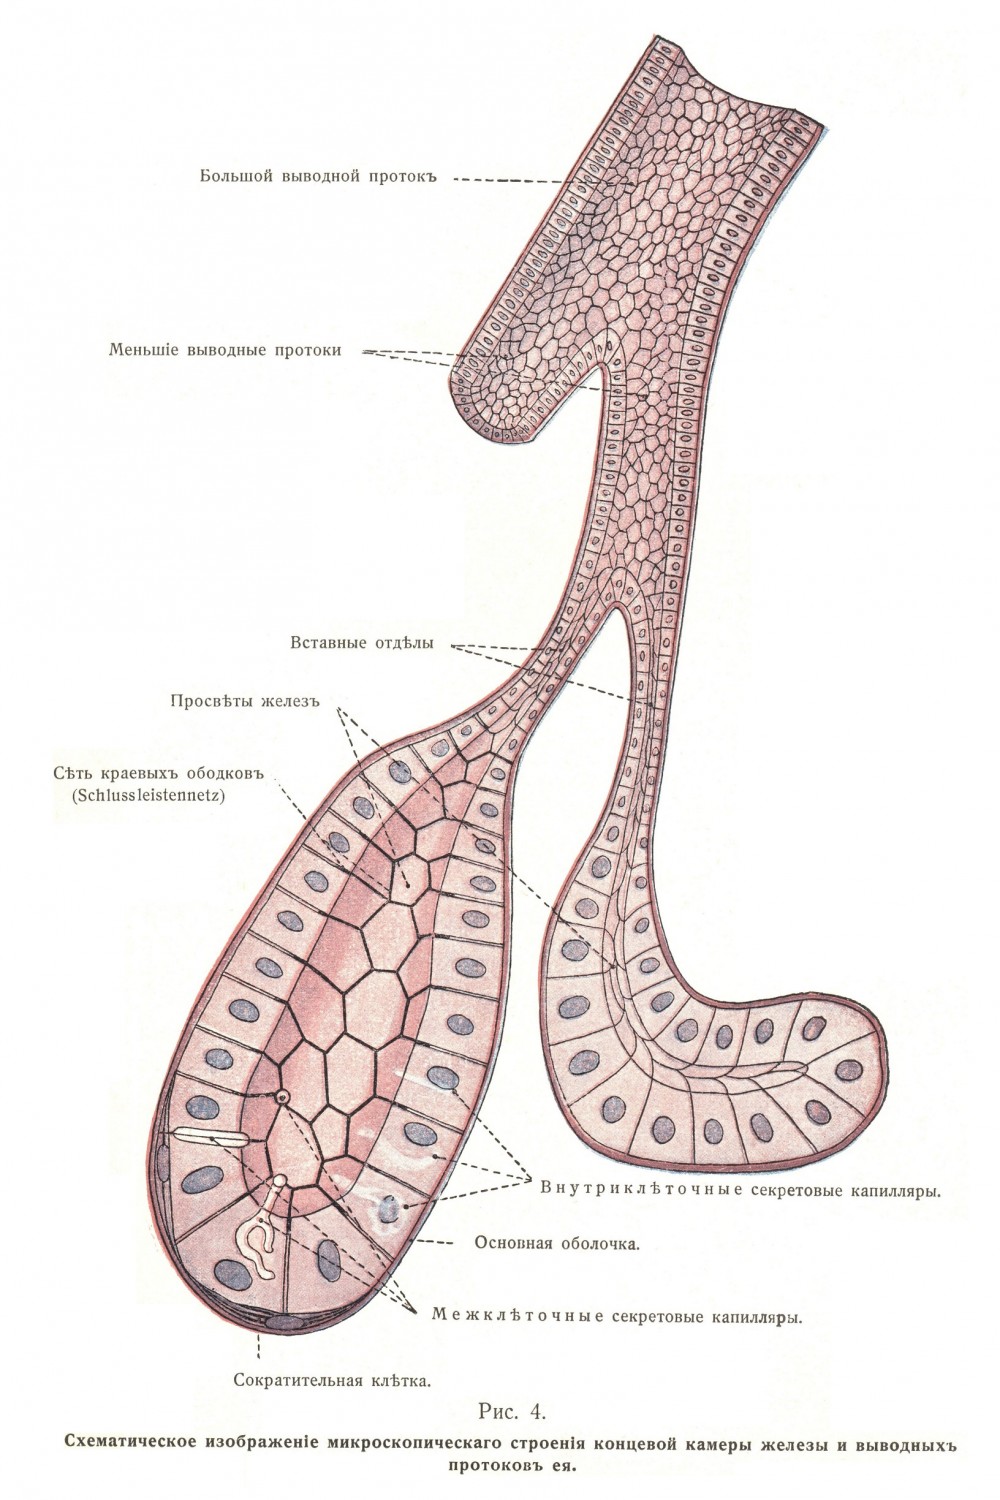 Мышечная оболочка, tunica muscularis